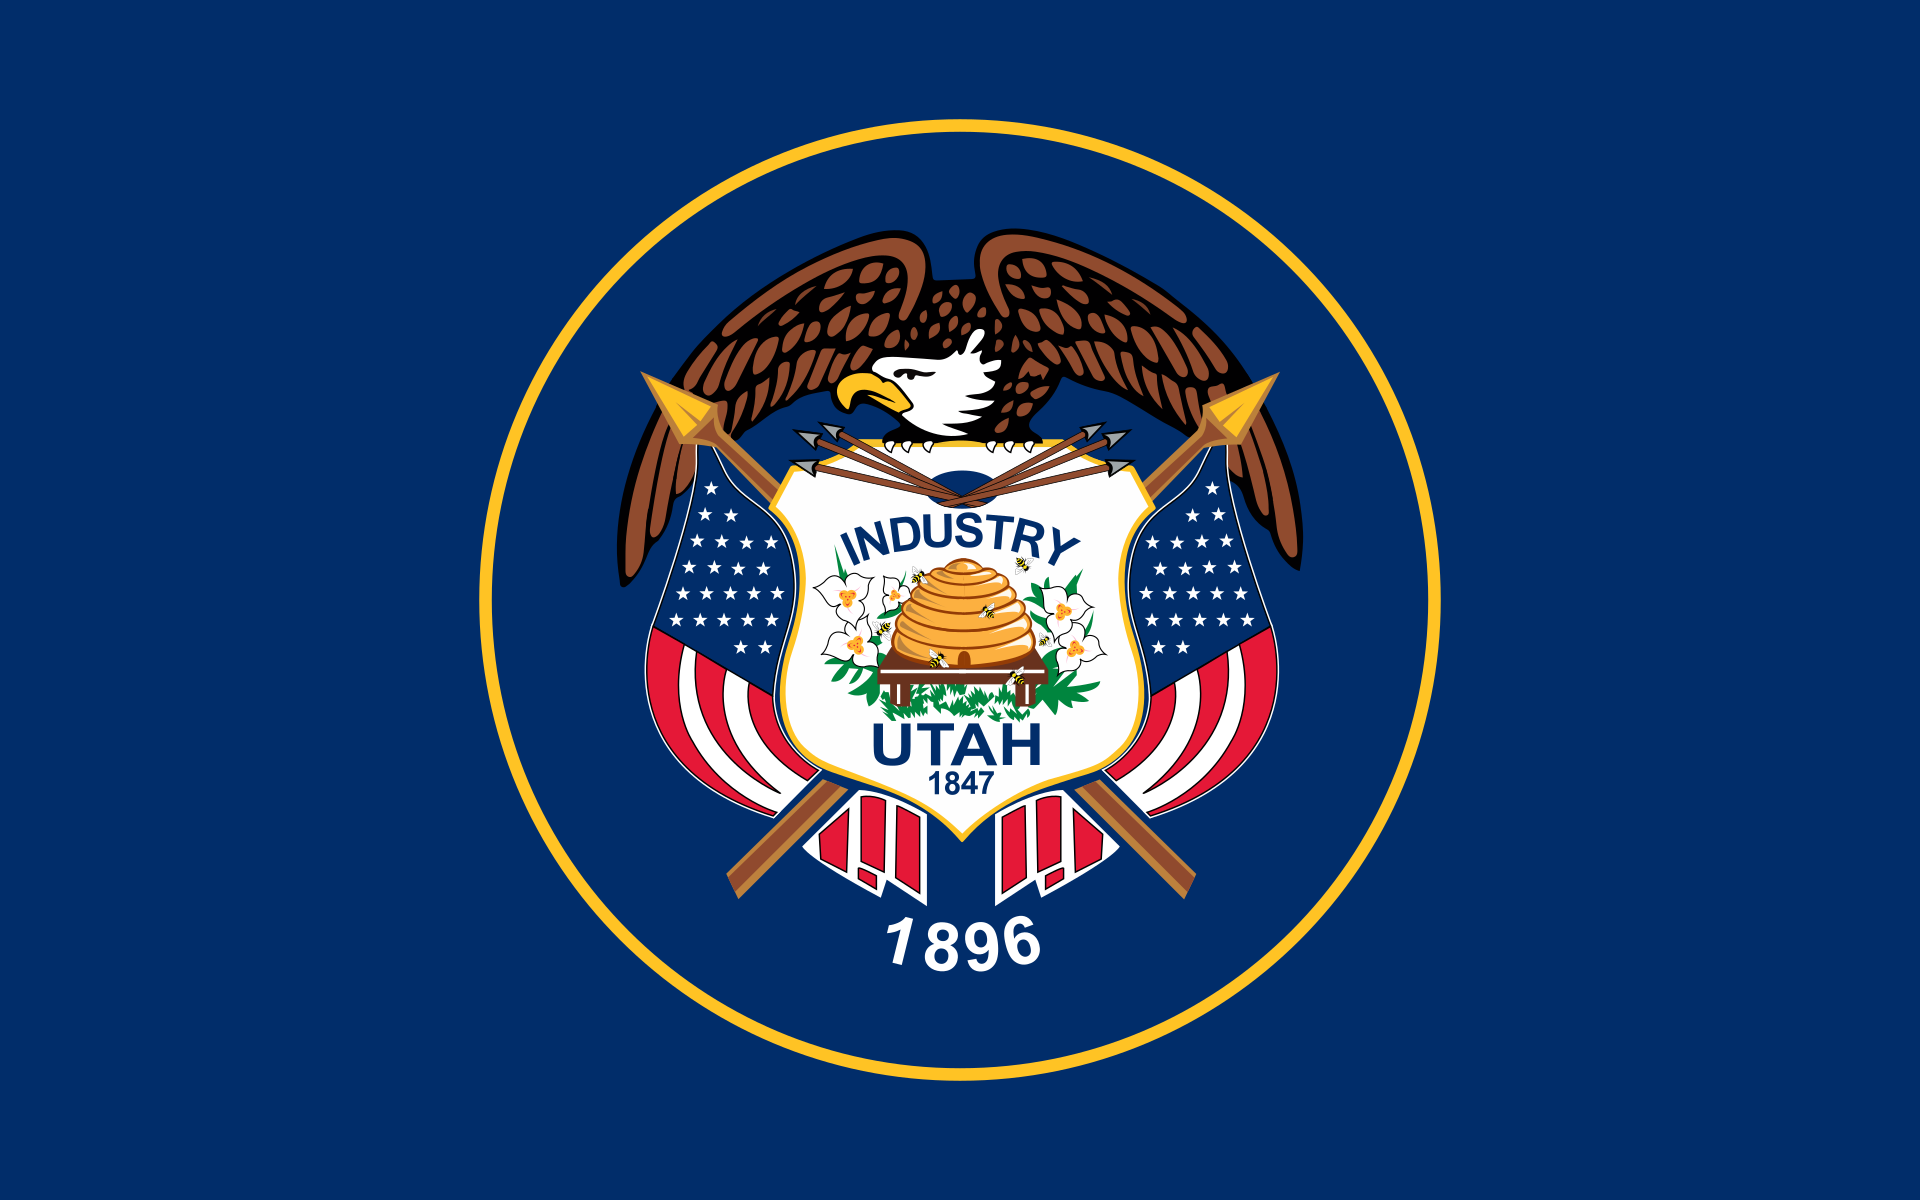 Utah Legislature approves new state flag